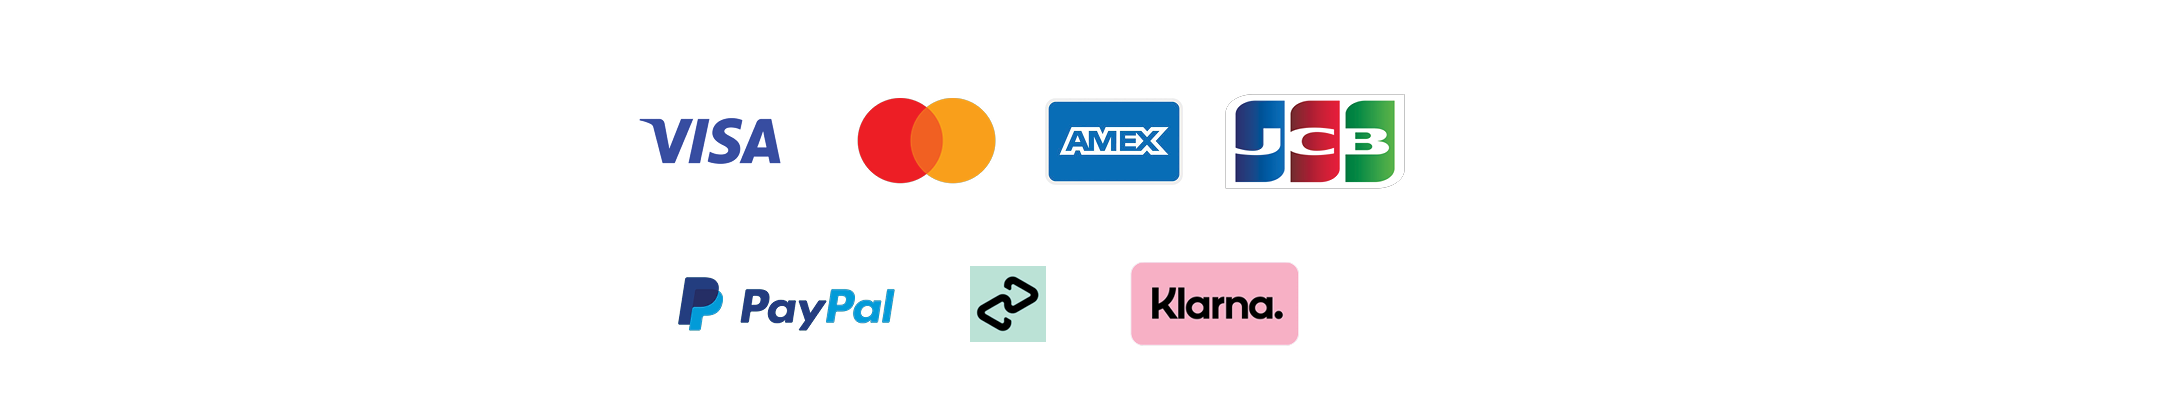 Logos of Visa, Mastercard, AMEX, JCB, Paypal, Afterpay, and Klarna